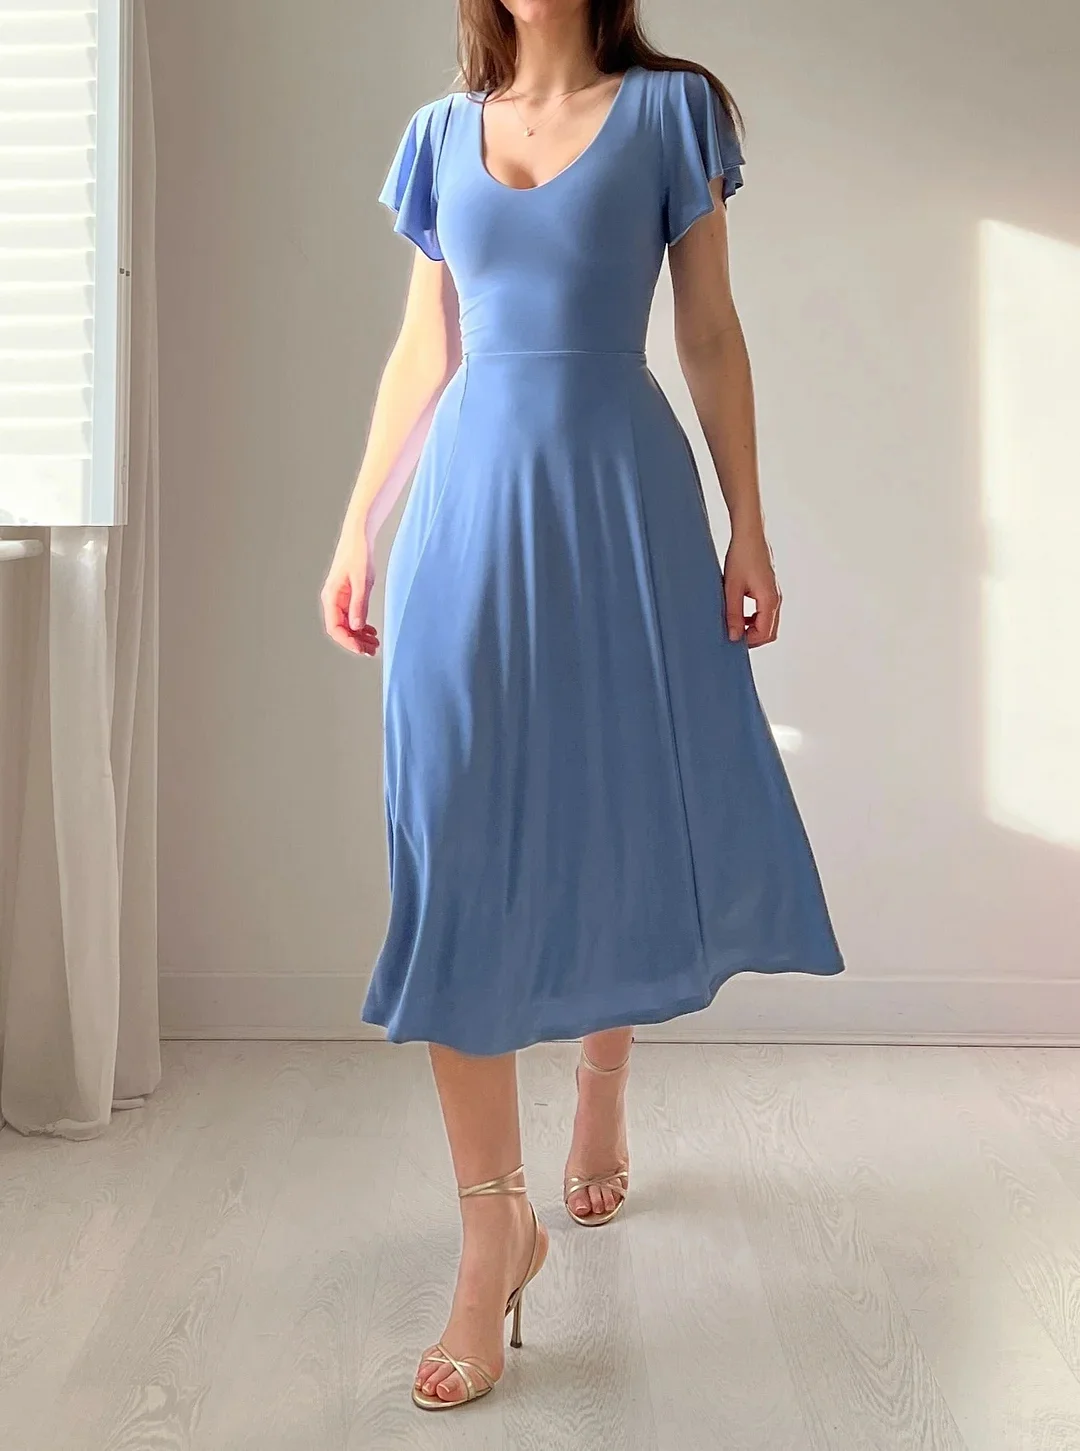 Elegant Reversible Dress (Buy 2 Free Shipping)